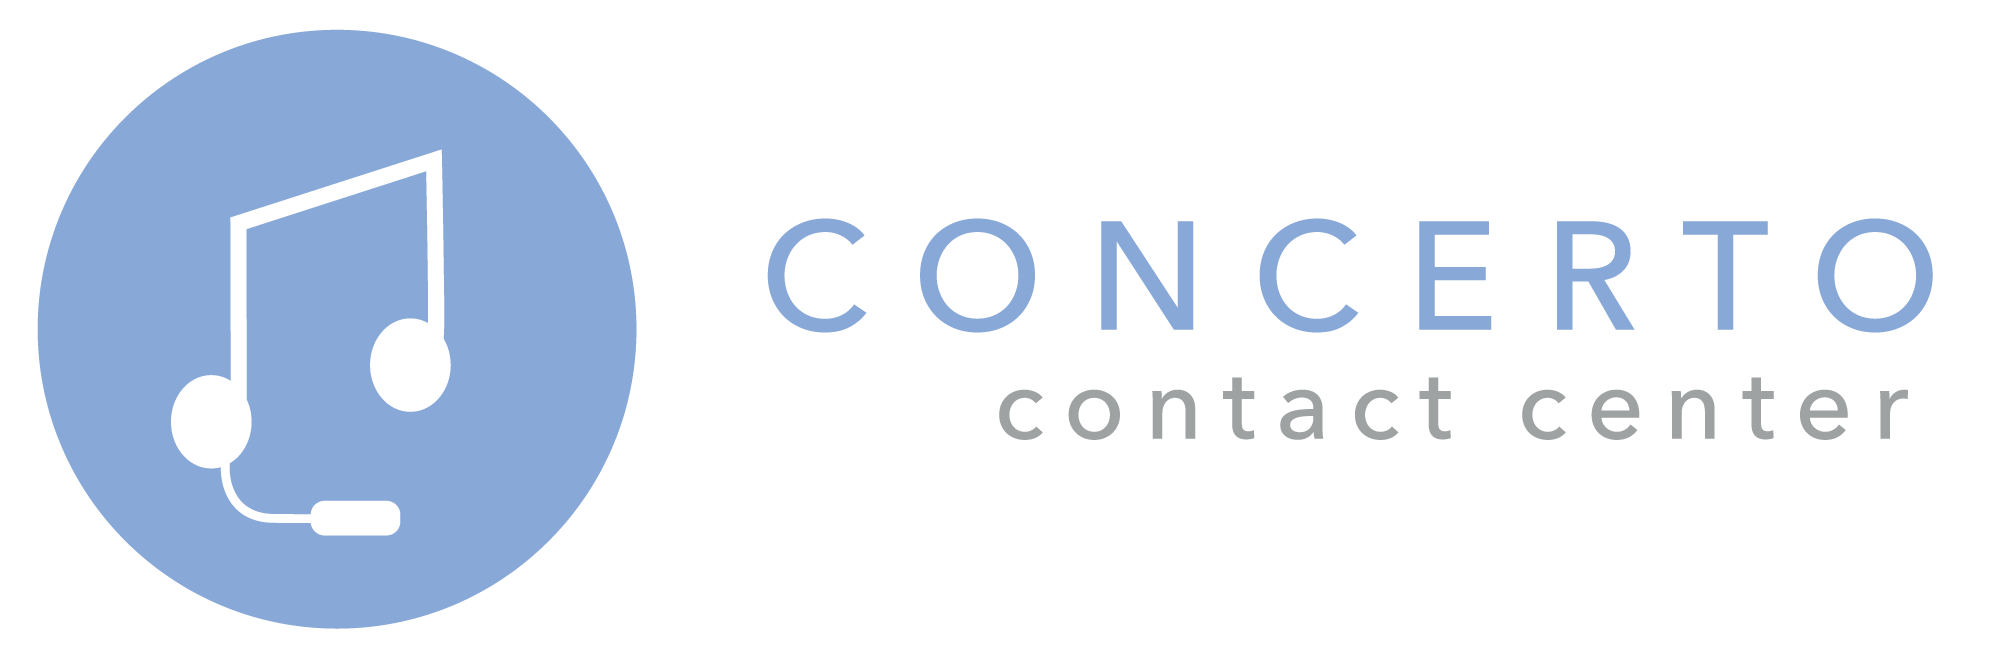 Concerto Contact Center